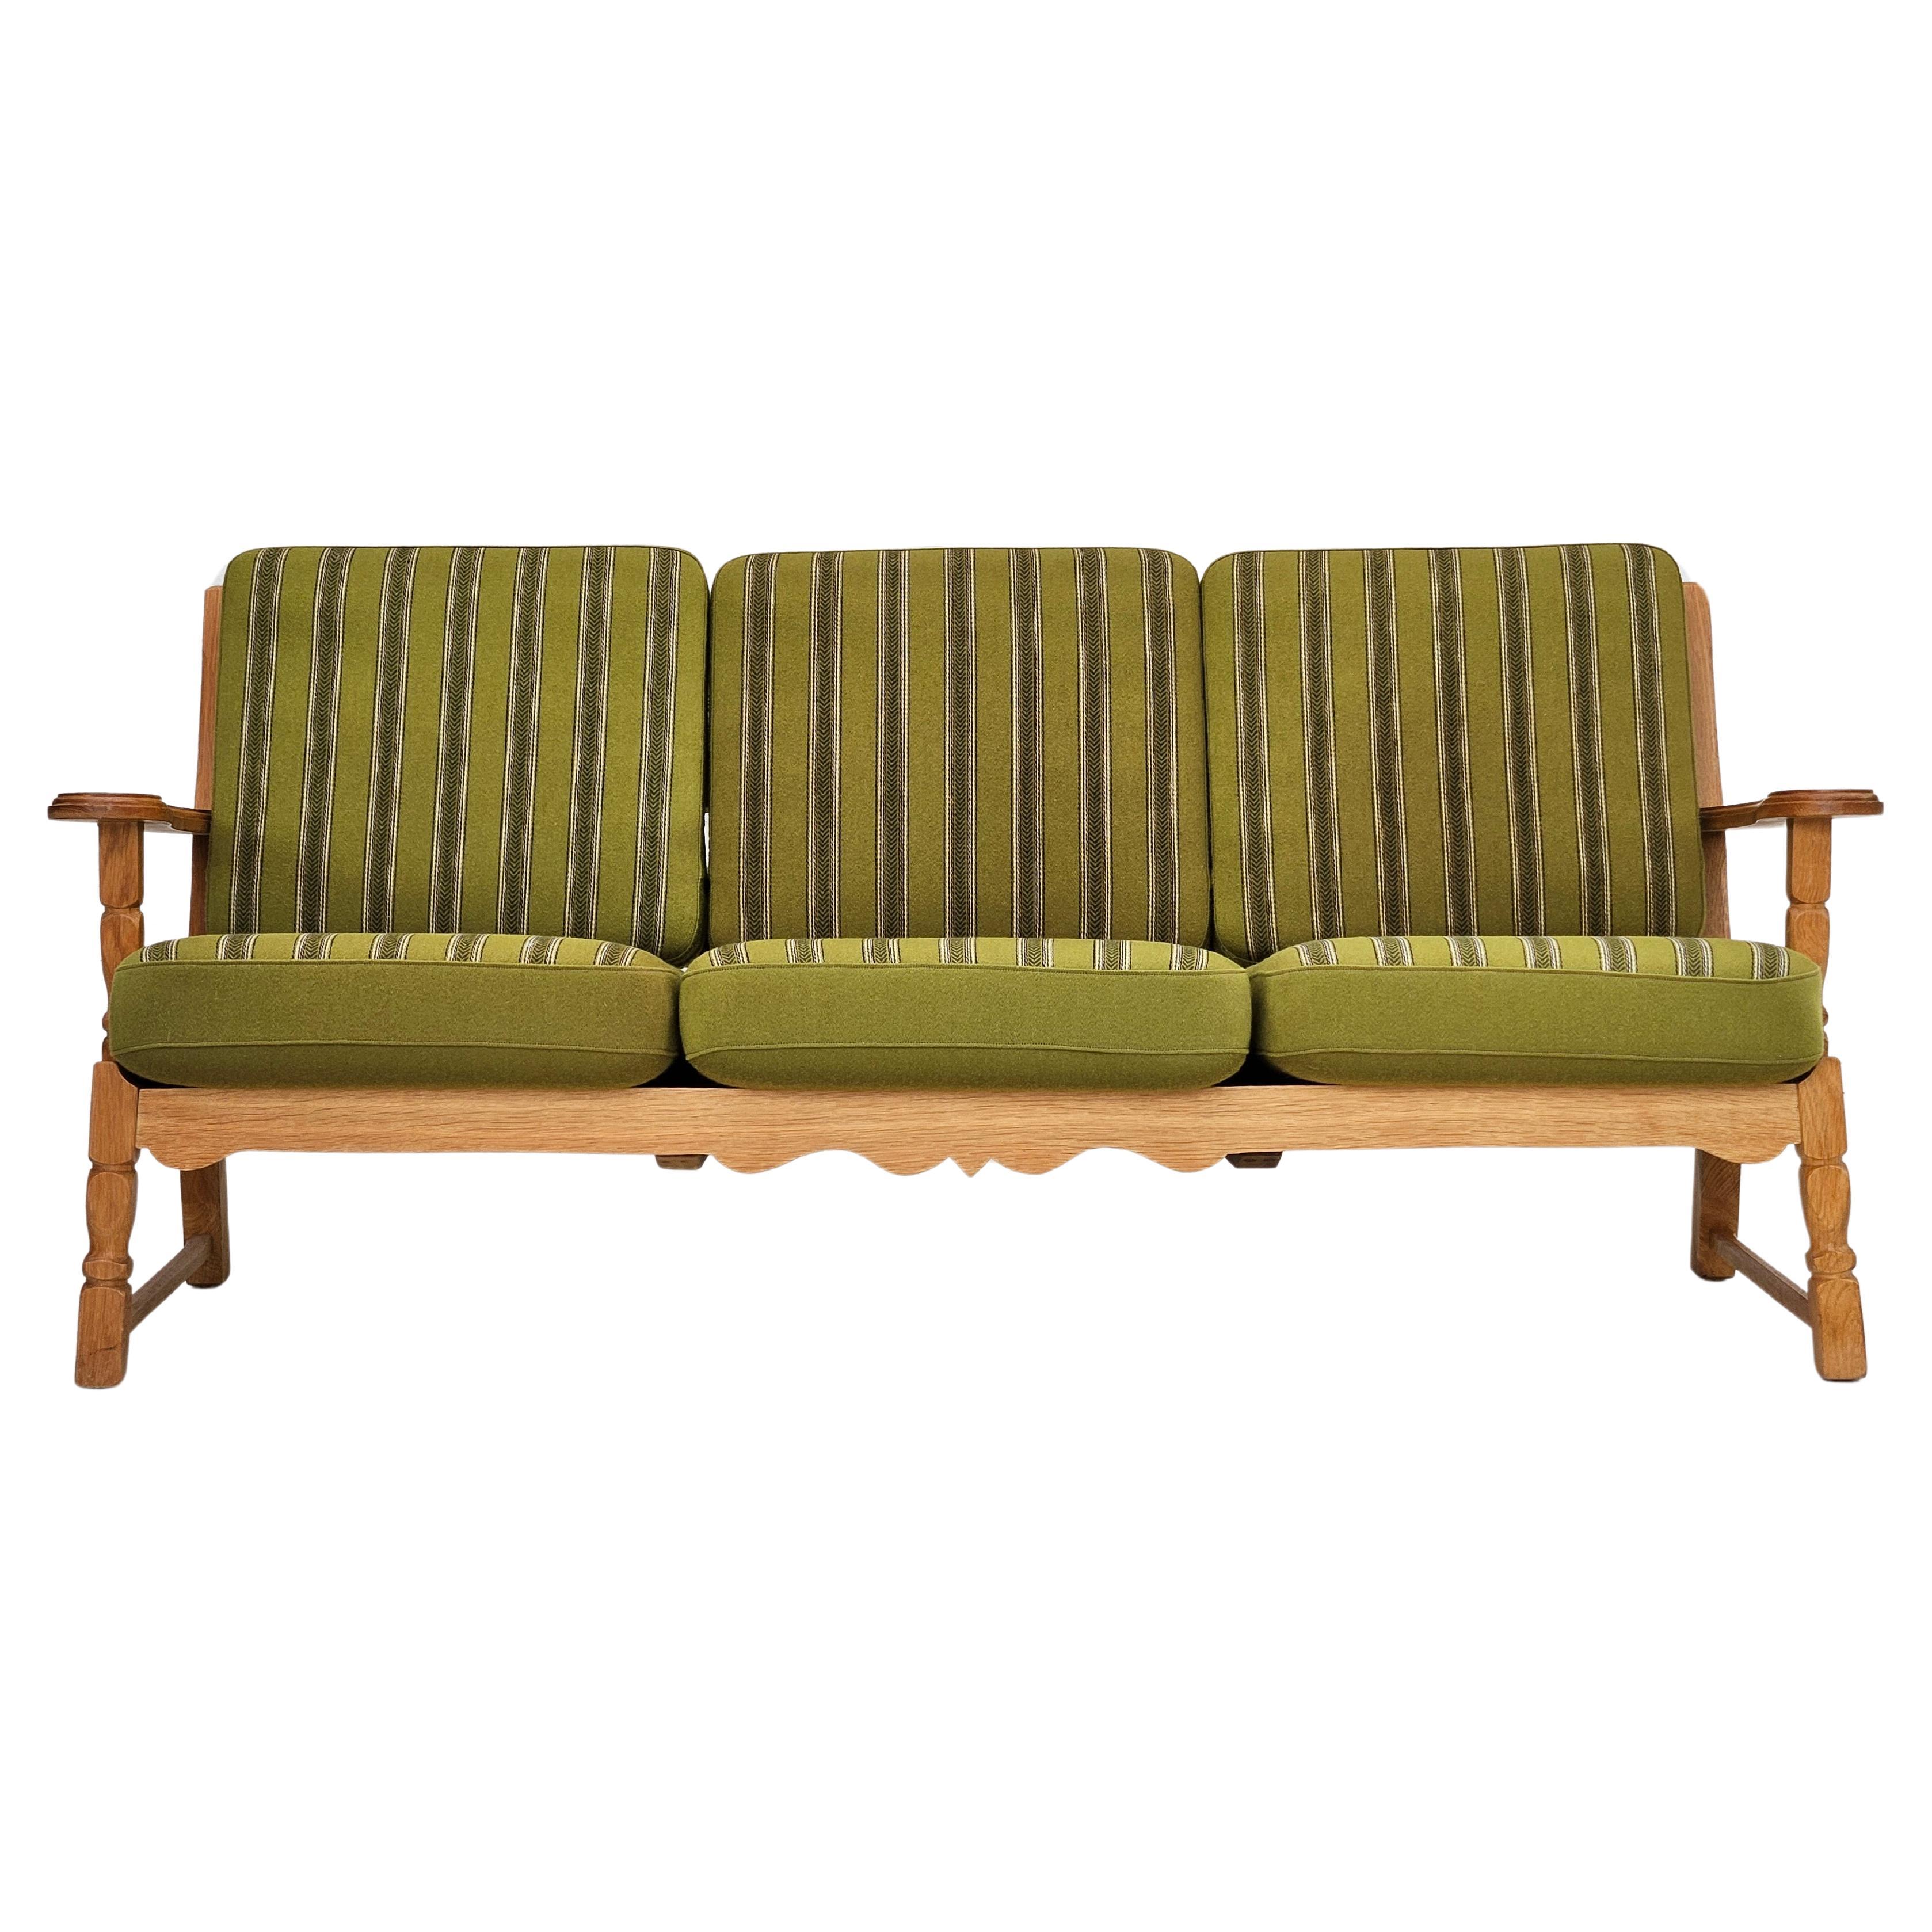 1970er, dänisches Design, 3-Sitzer-Sofa in sehr gutem Originalzustand: keine Gerüche und keine Flecken. Leicht lackiertes massives Eichenholz, Möbelwollstoff. Federn in den Rücken- und Sitzpolstern. Hergestellt von einem dänischen Möbelhersteller in